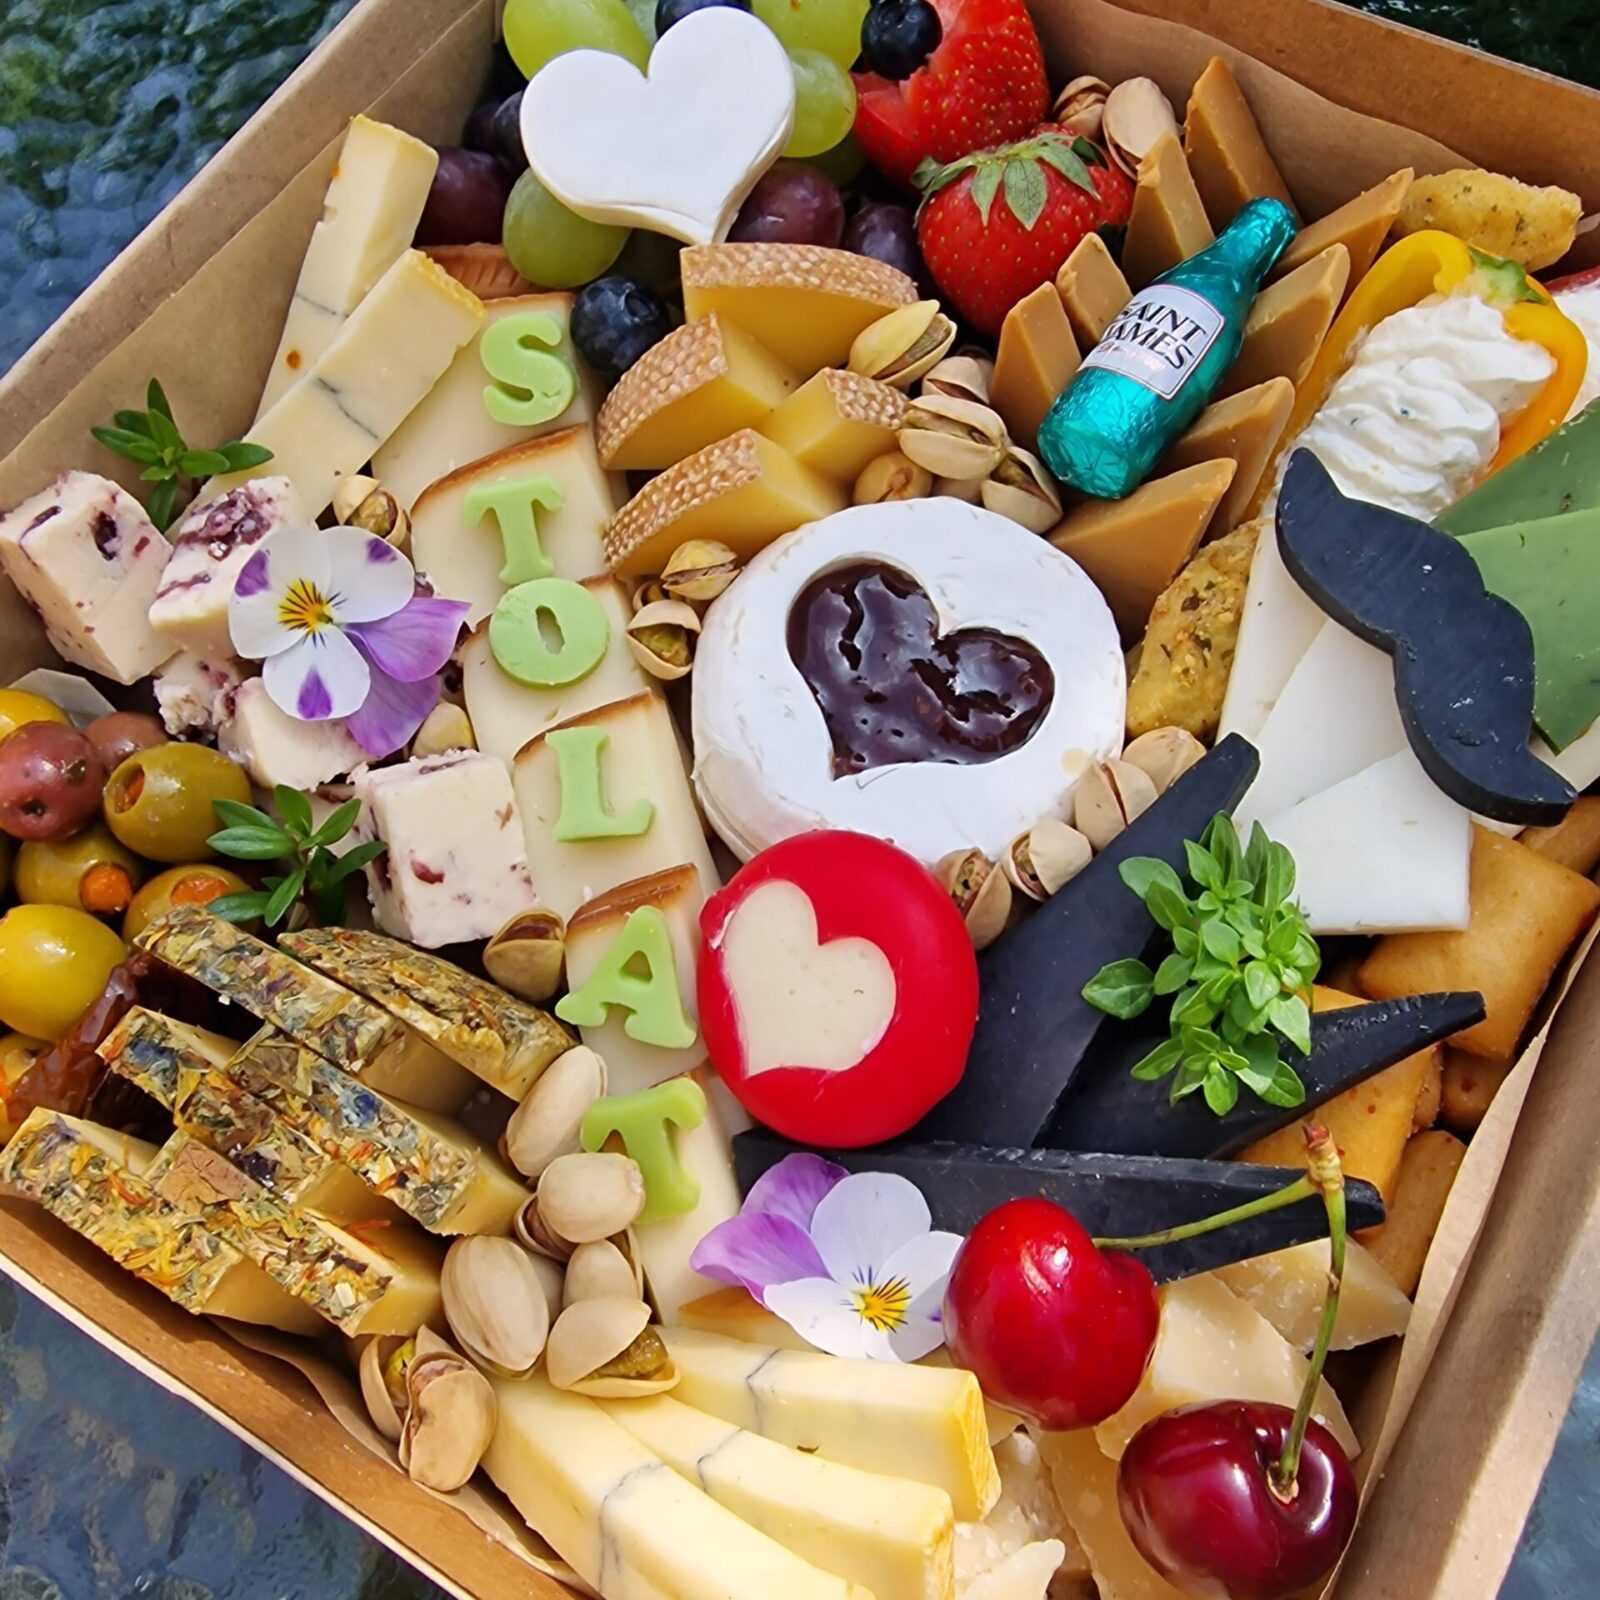 Vege box. Box wypełniony serami, warzywami, owocami, a do tego jeszcze orzechy oraz przekąski - te słodkie jak i słone.